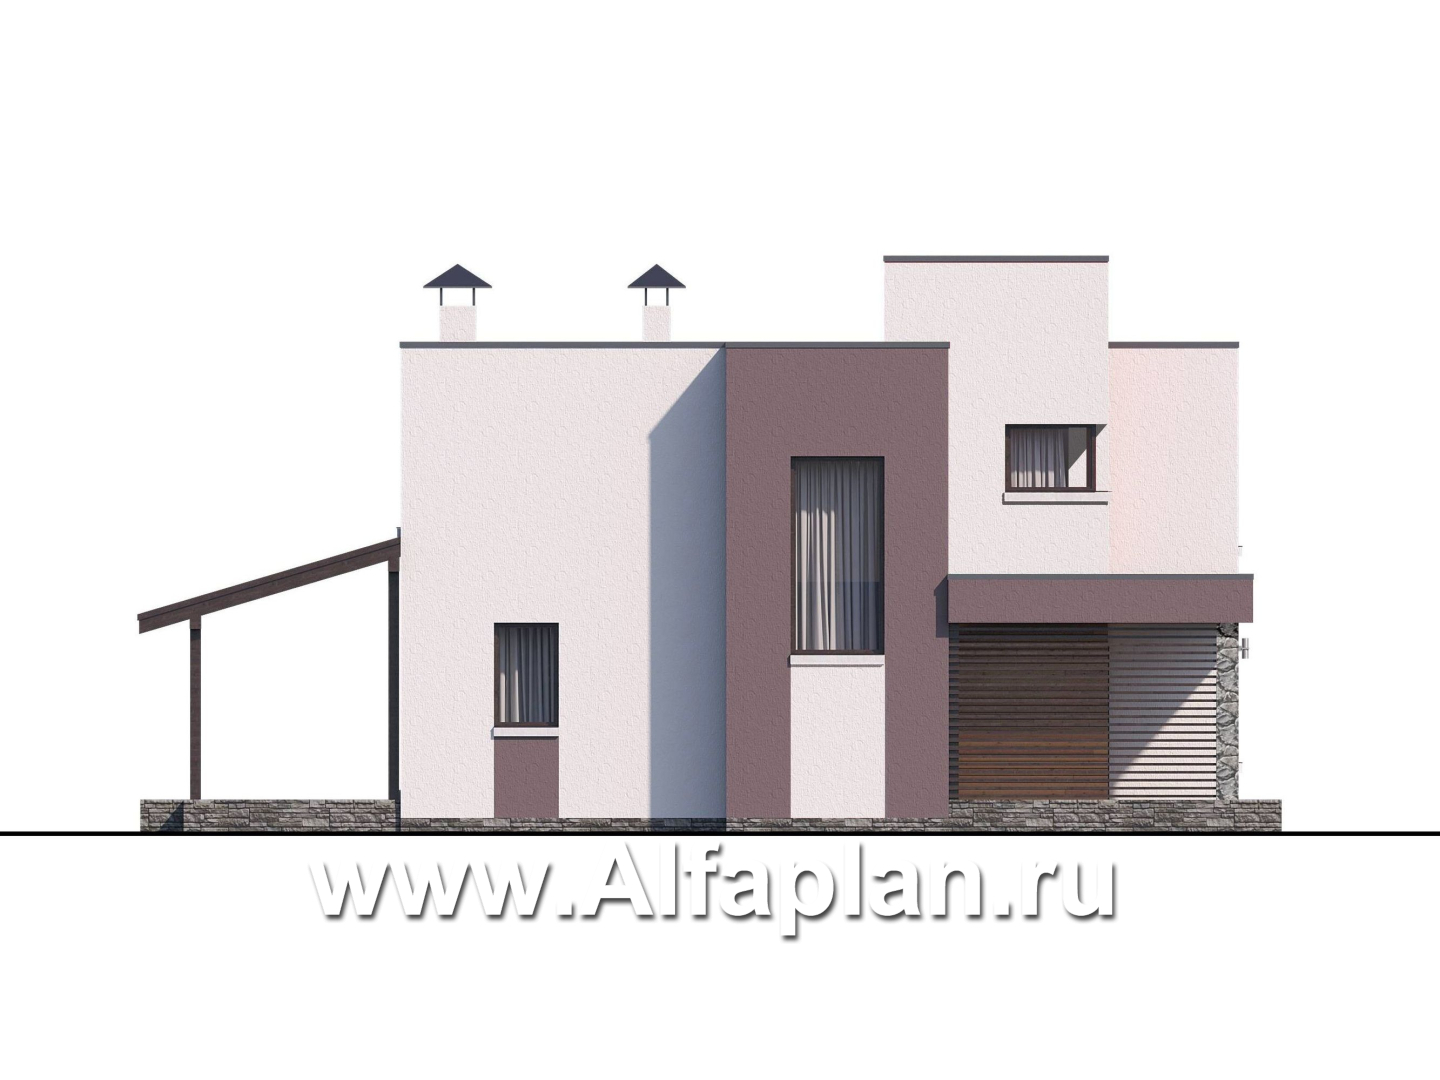 Проекты домов Альфаплан - «Арс» - дом с плоской кровлей для узкого участка - дополнительное изображение №6